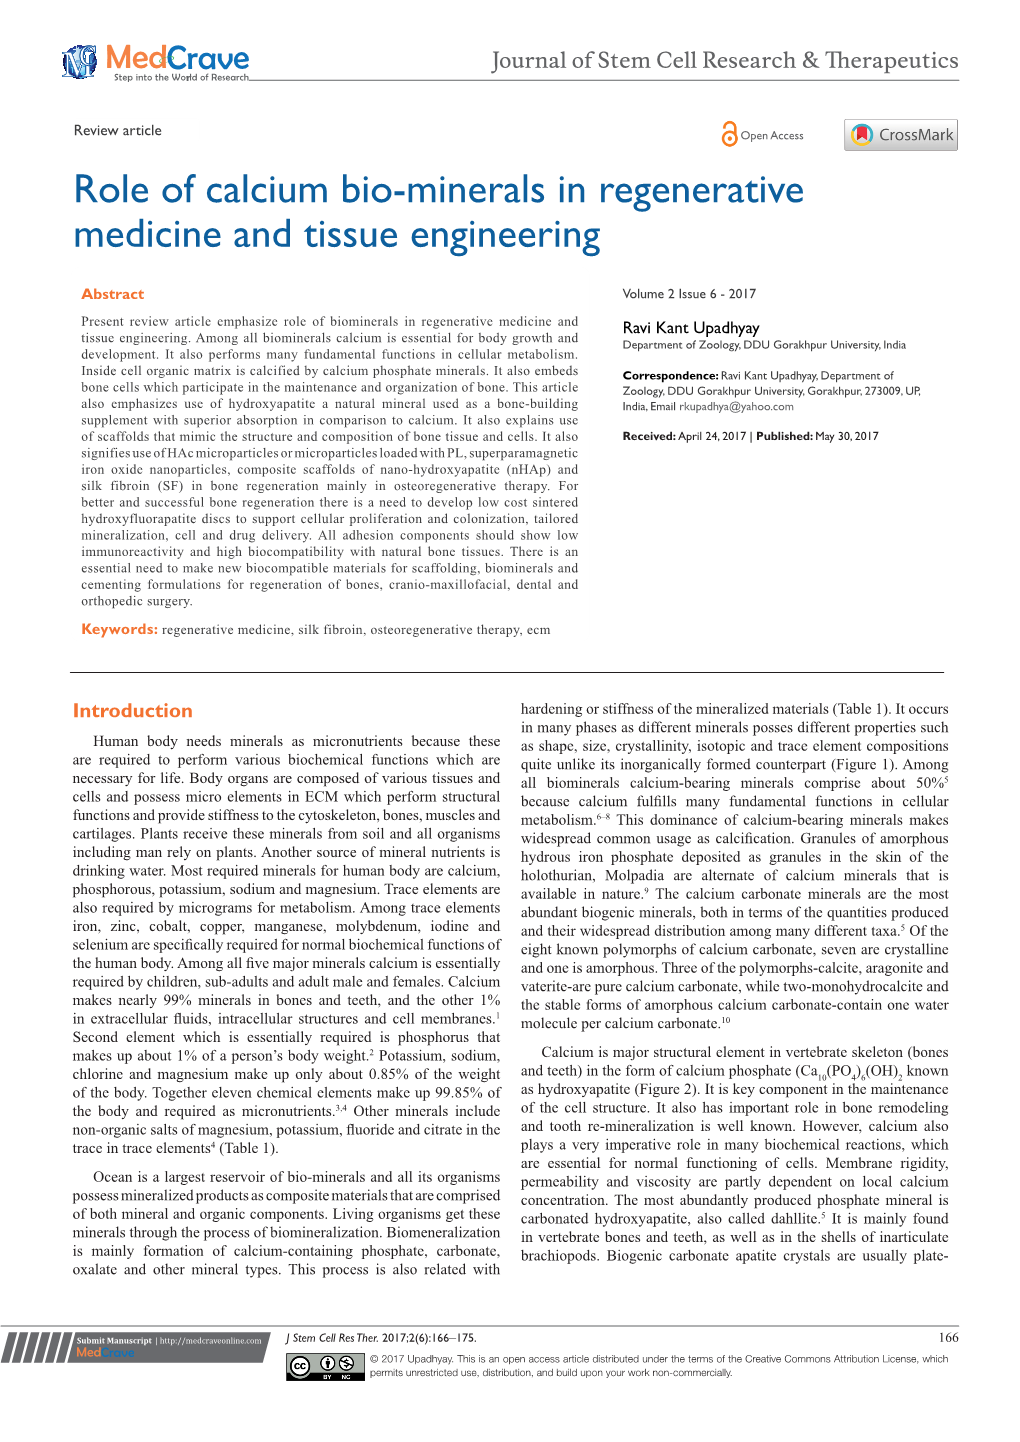 Role of Calcium Bio-Minerals in Regenerative Medicine and Tissue Engineering